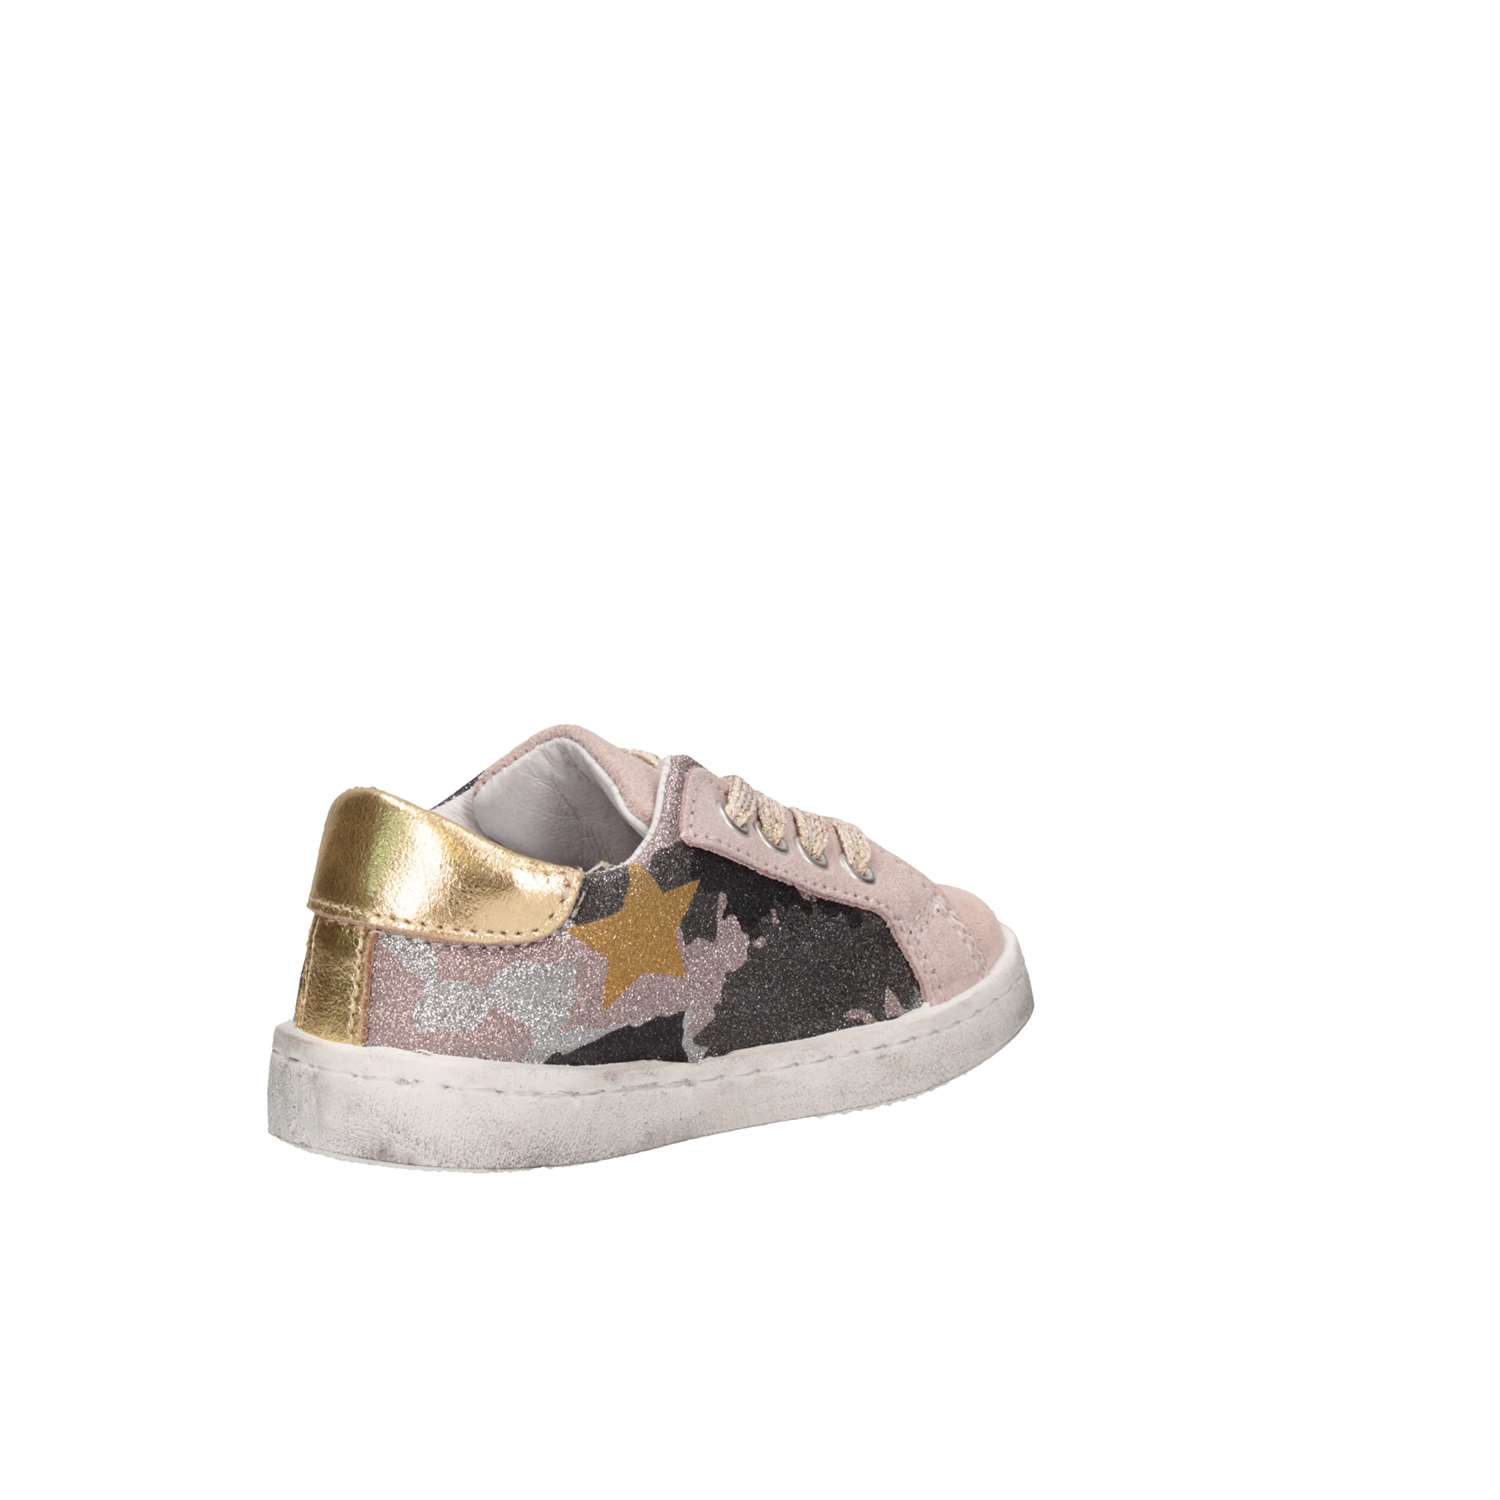 2 Star 2SB1332 A/B/C Pink / Gray Shoes Child 